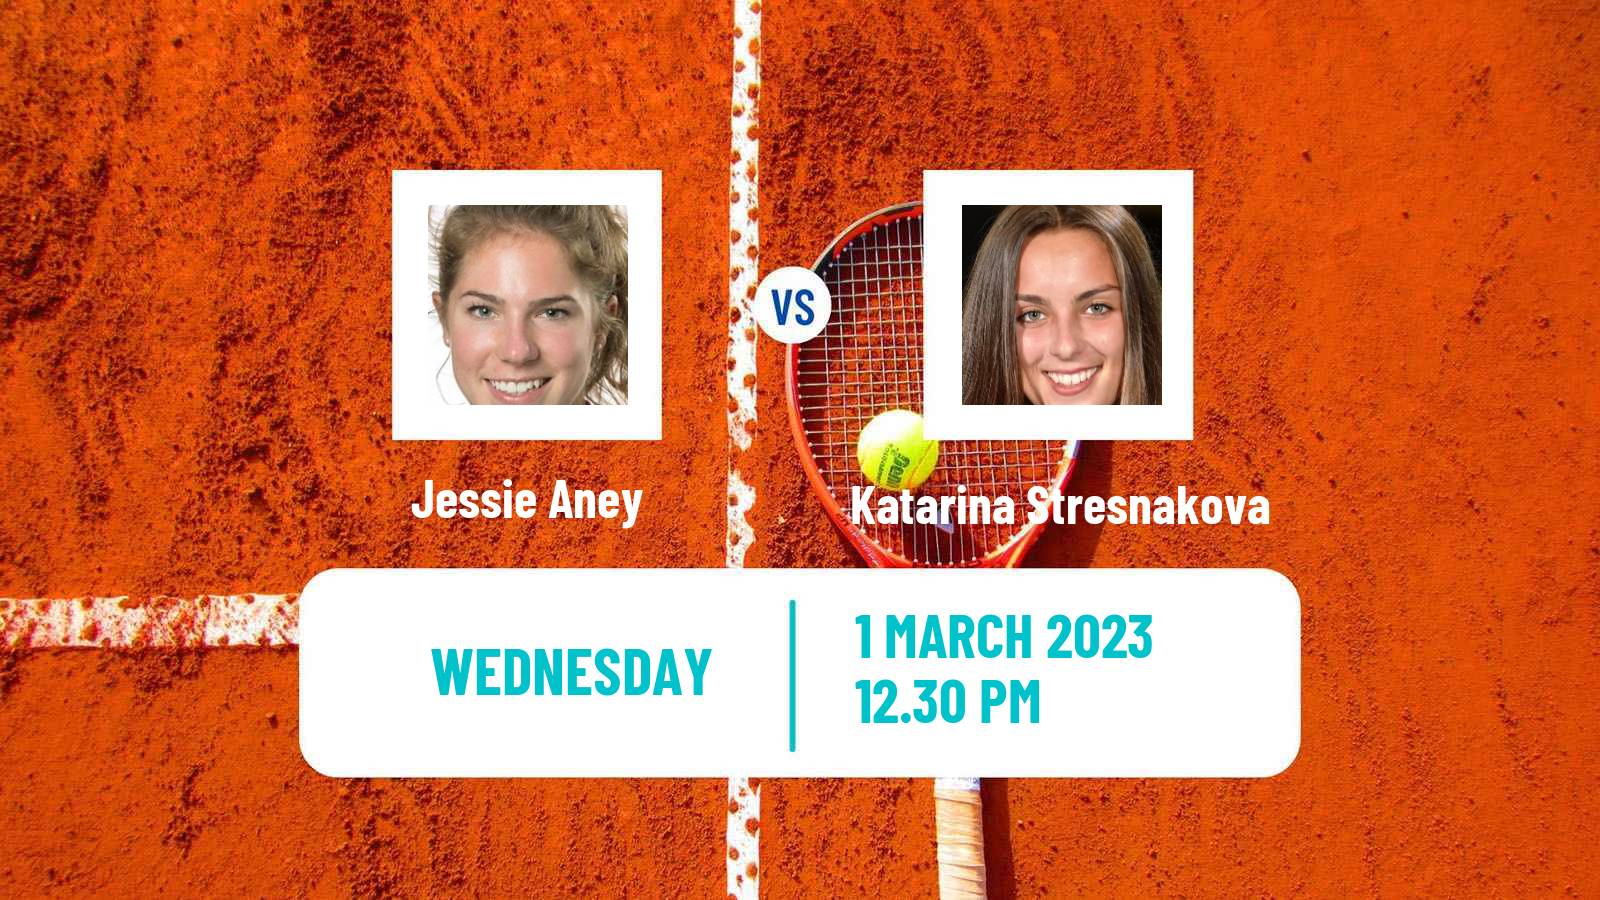 Tennis ITF Tournaments Jessie Aney - Katarina Stresnakova